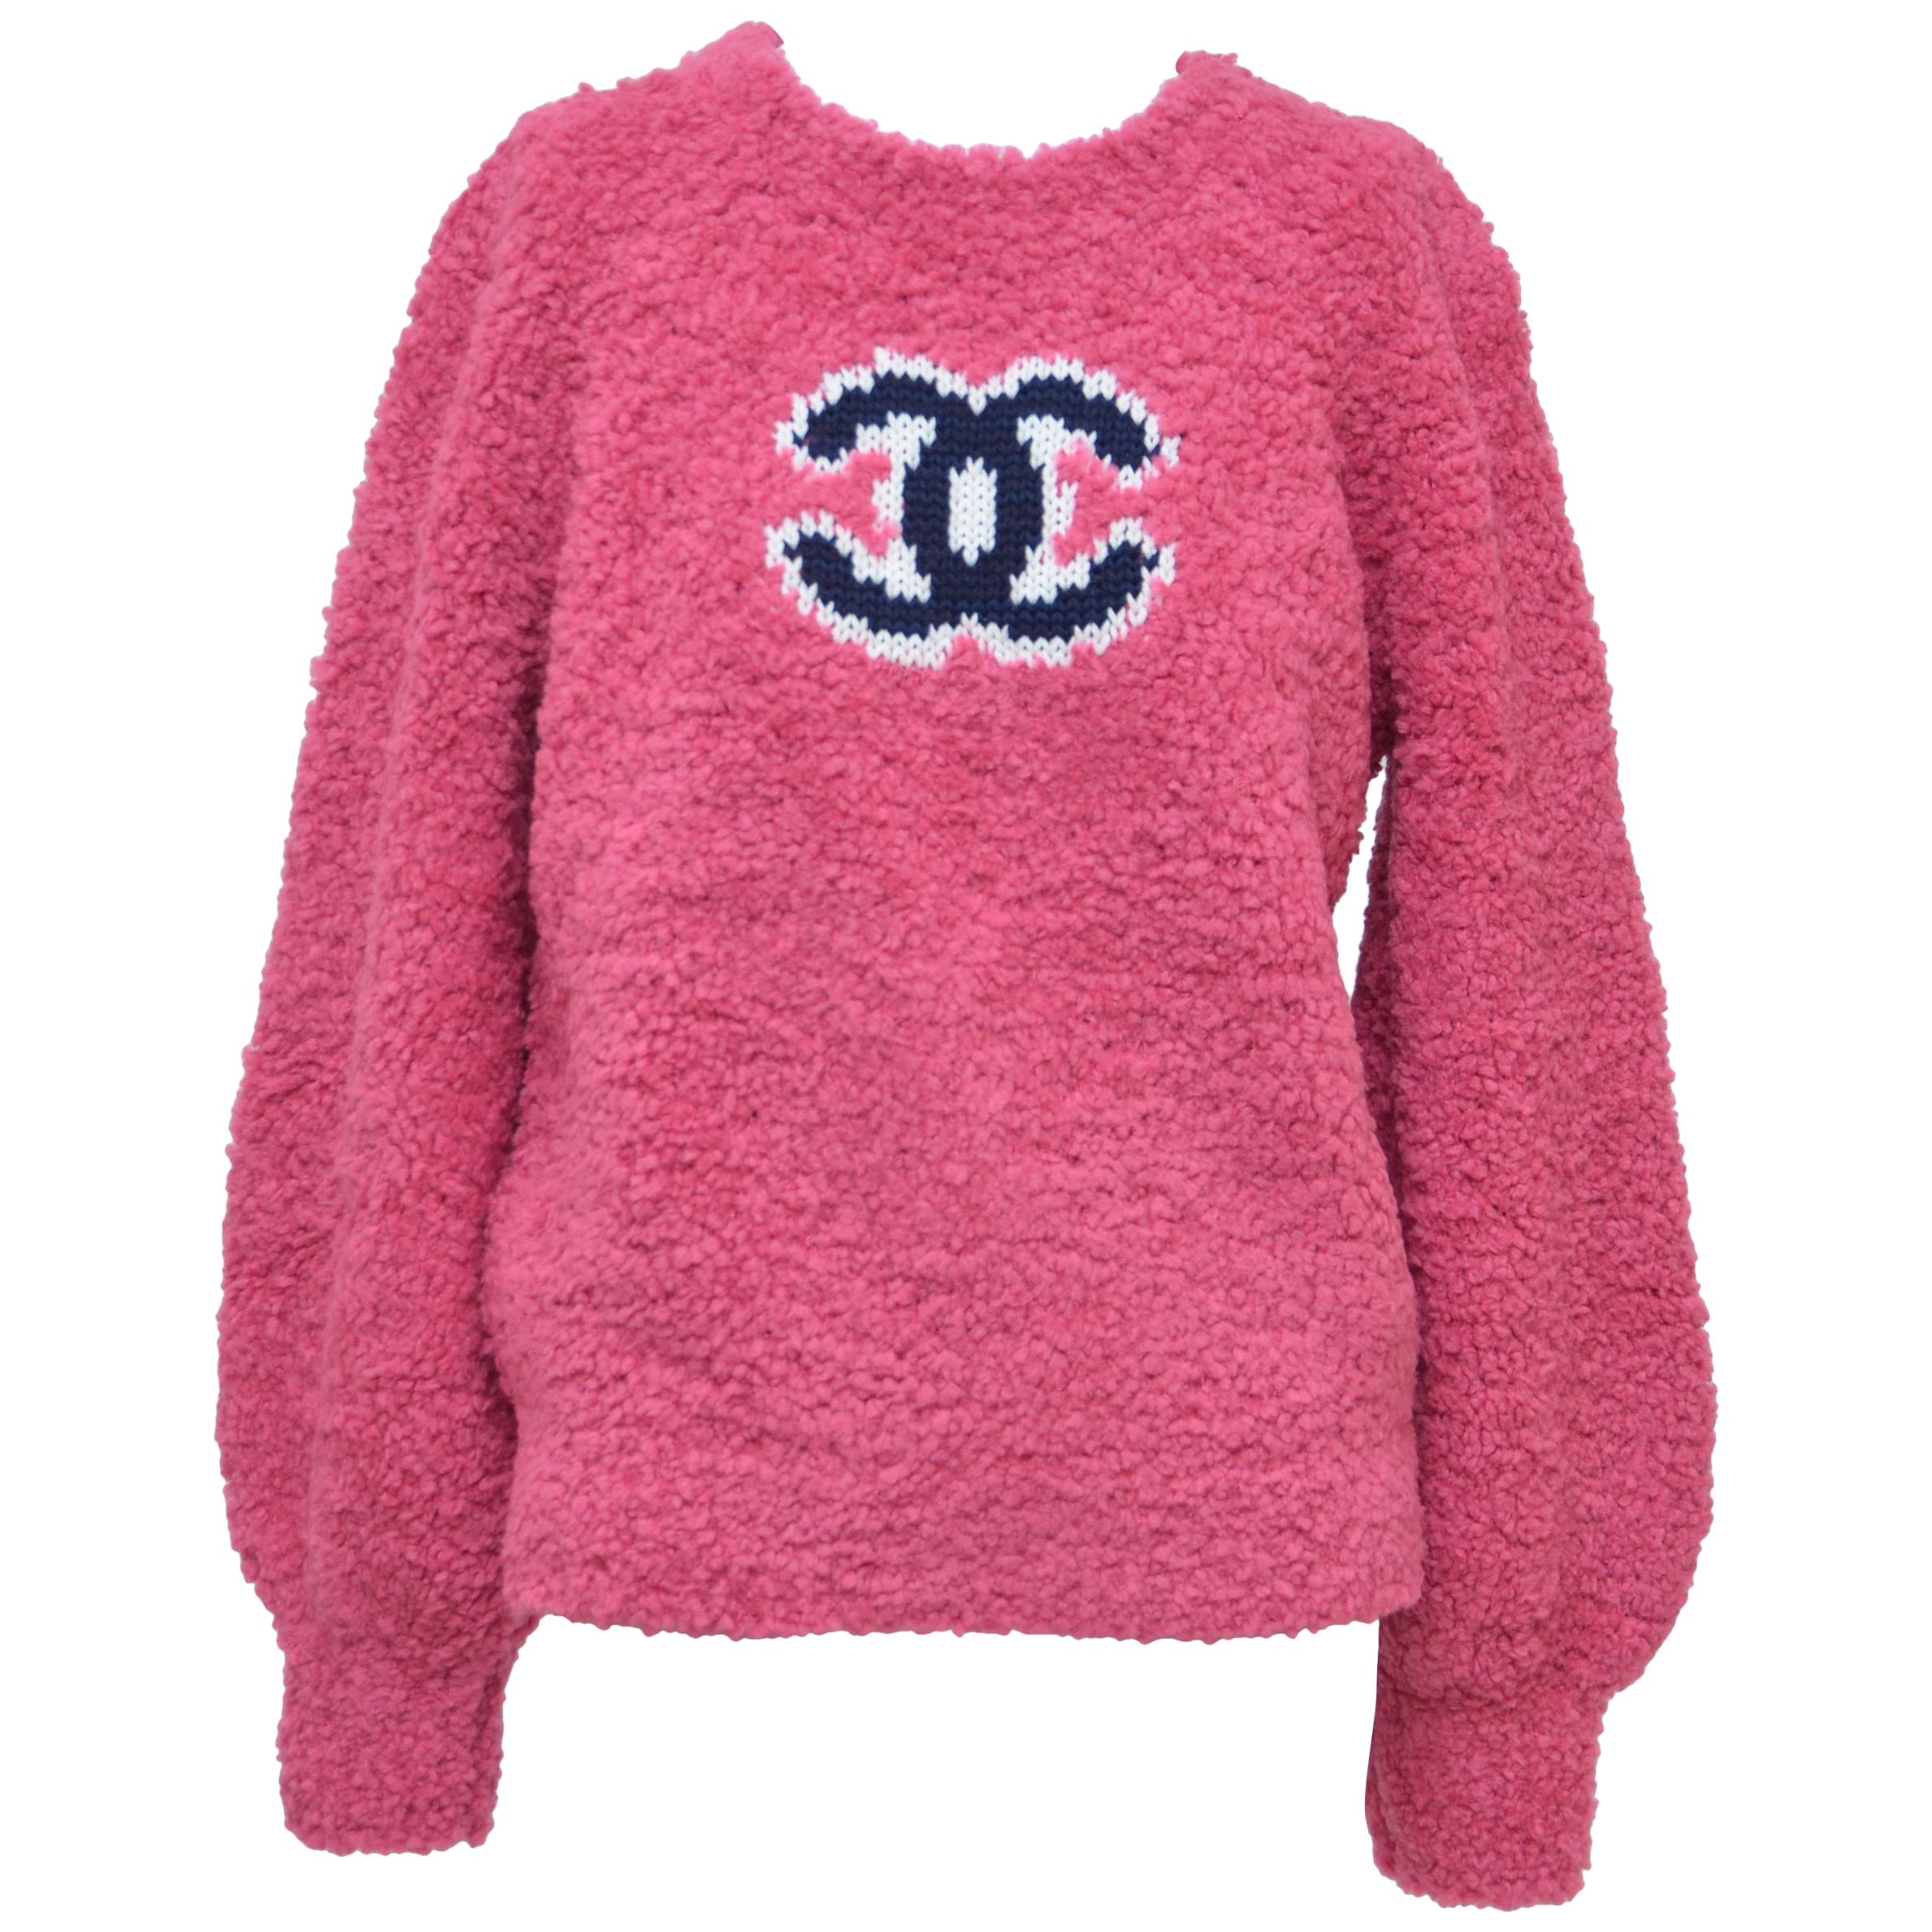 Chia sẻ với hơn 82 về chanel pink sweater mới nhất